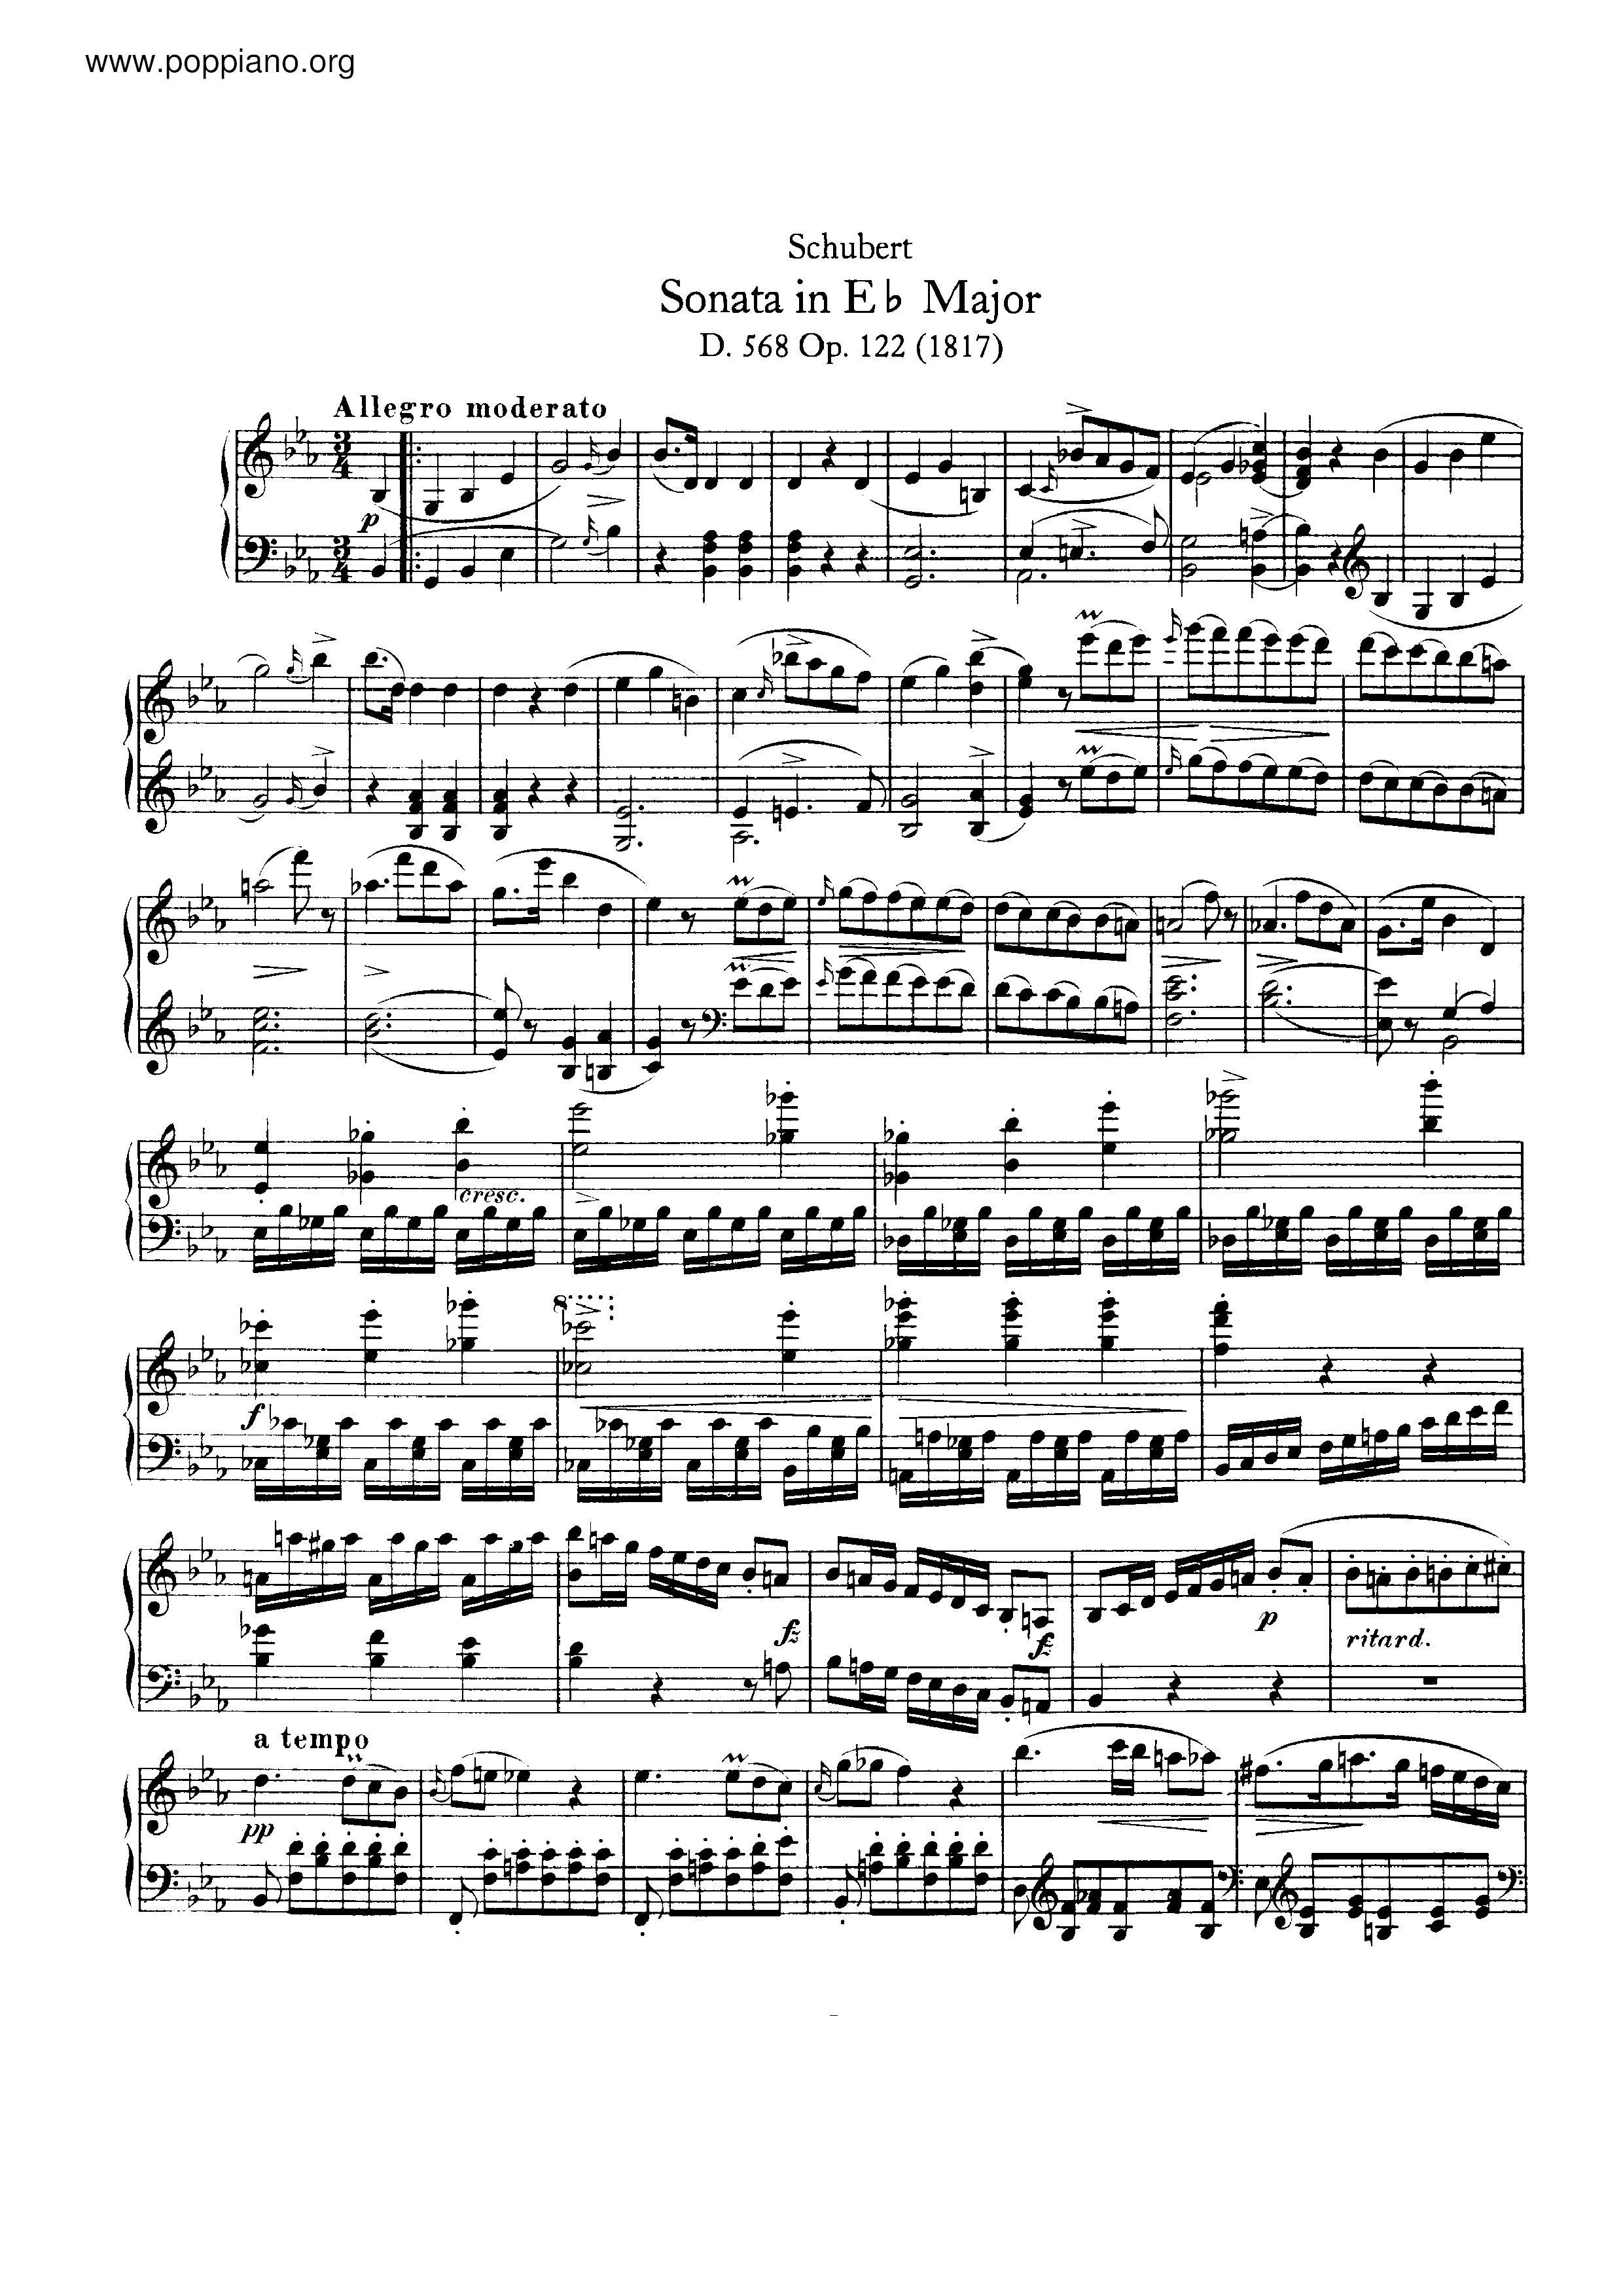 Piano Sonata in E flat major, D.568 Score